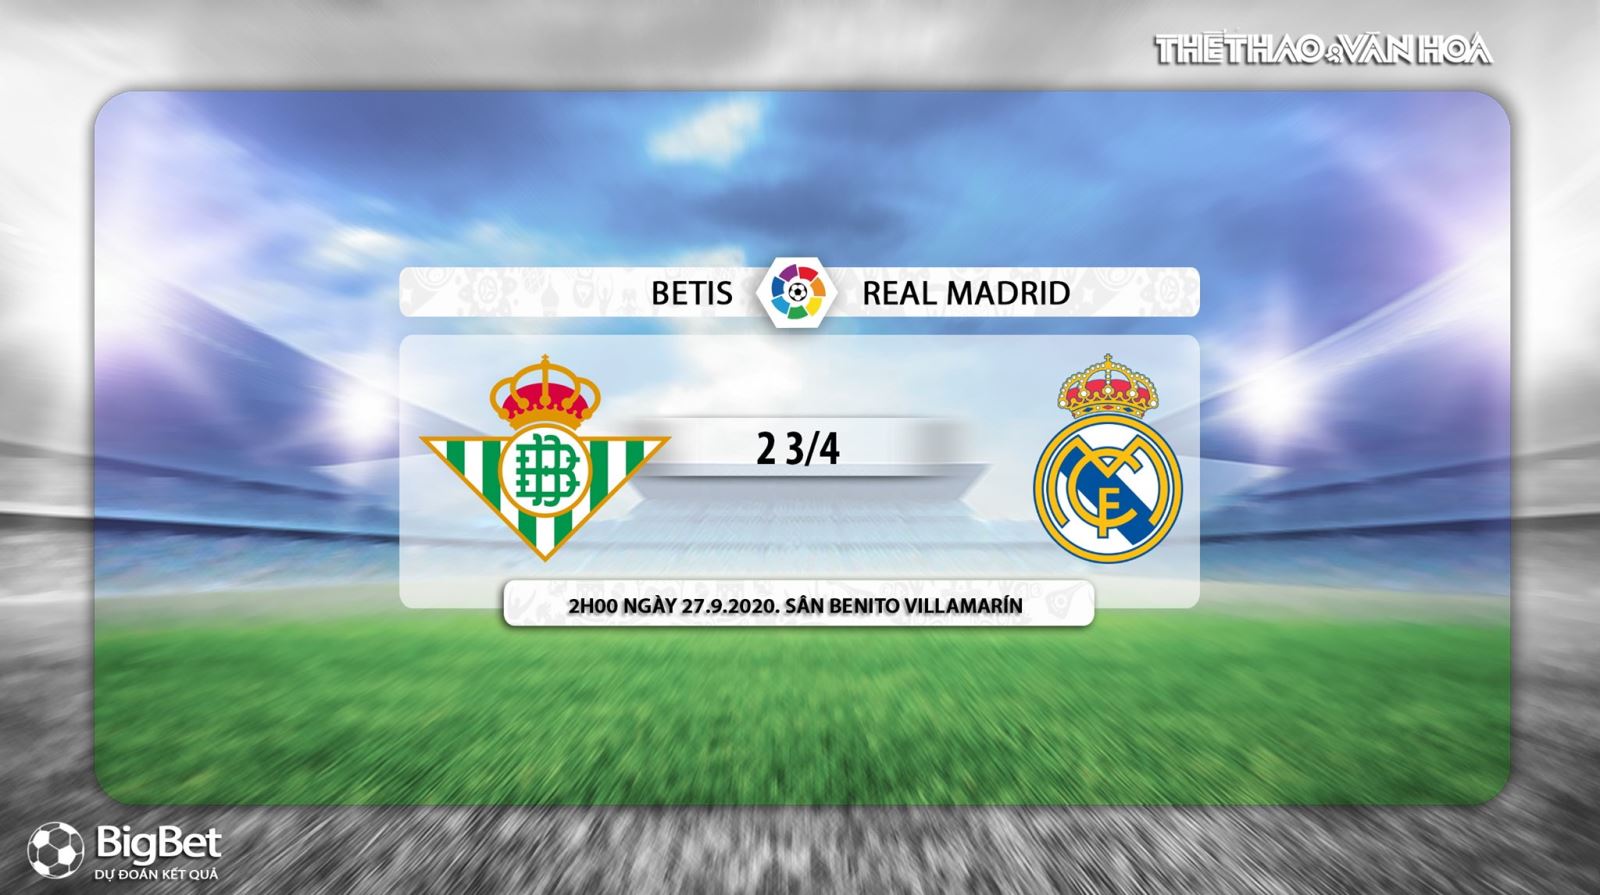 Betis vs Real Madrid, nhận định bóng đá Betis vs Real Madrid, Real Betis, nhận định Betis vs Real Madrid, nhận định bóng đá bóng đá, nhận định bóng đá